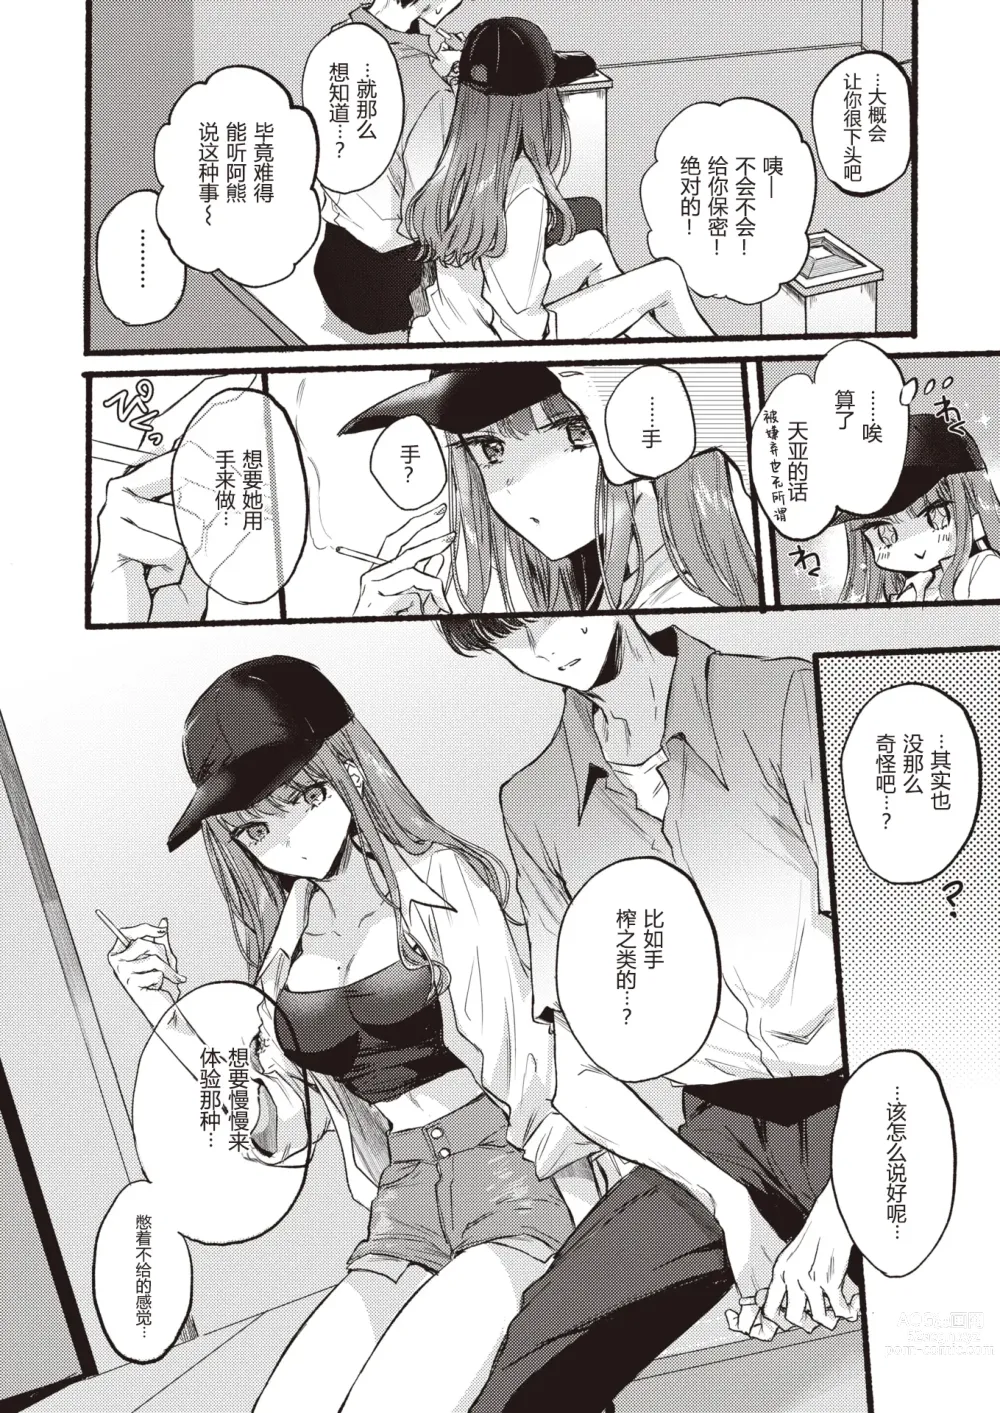 Page 5 of manga Himetomo - The secret fetish!